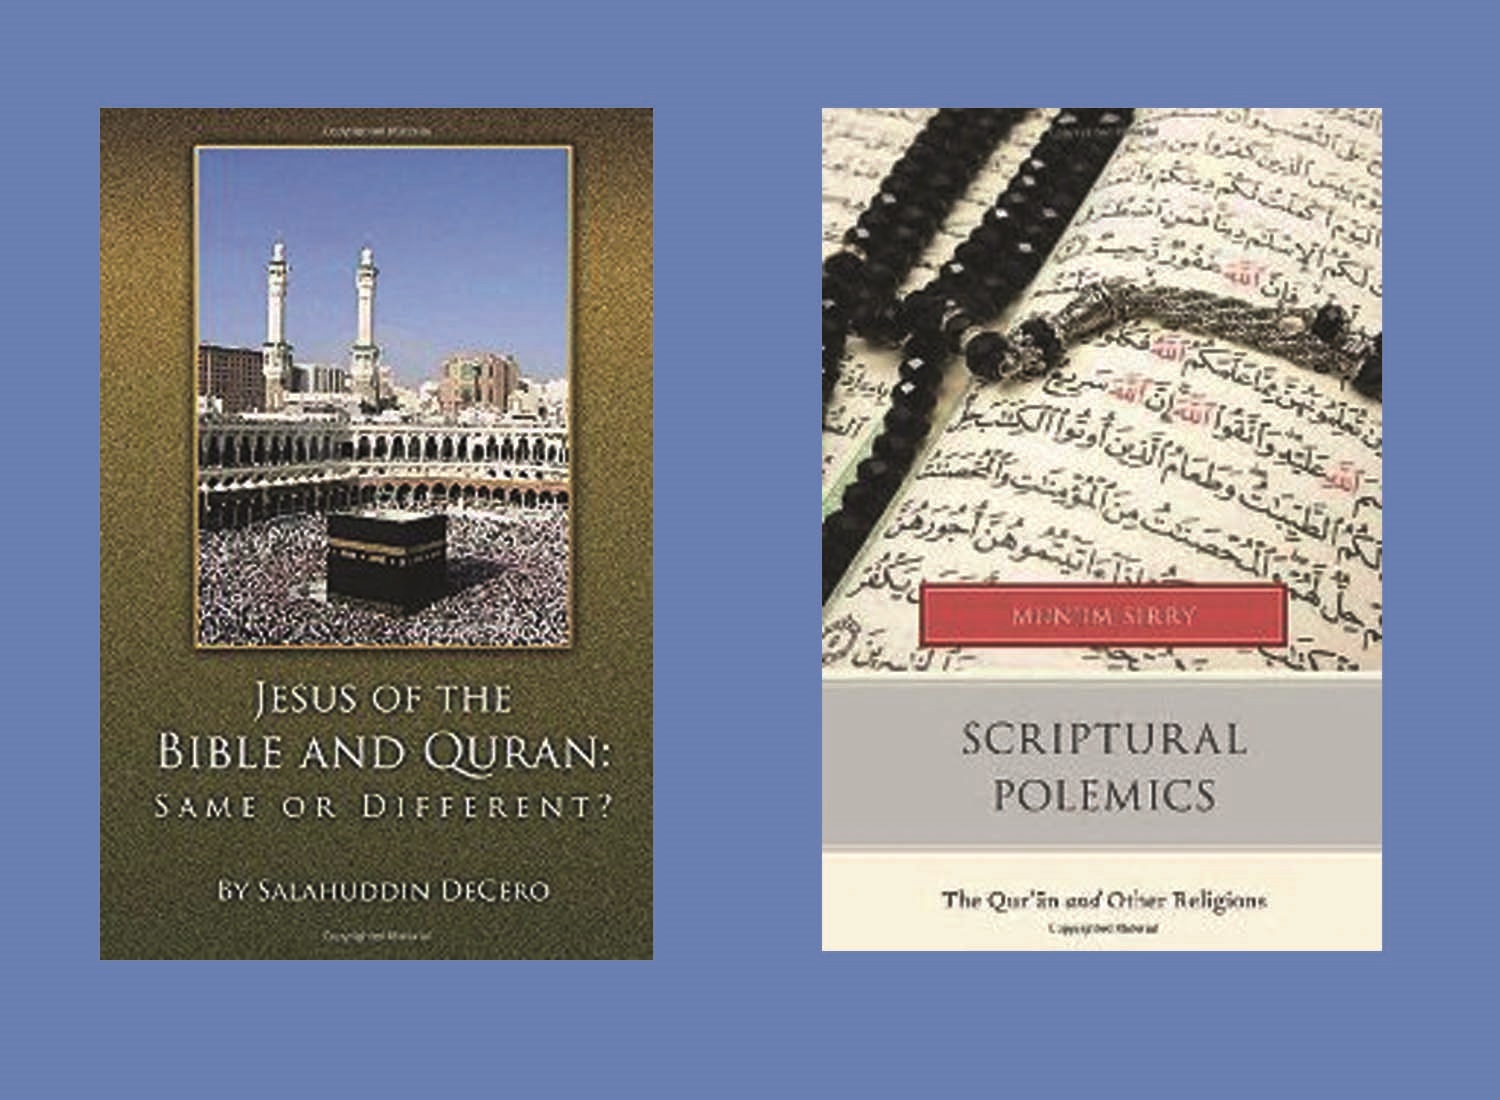 روایت مسیحی مسلمان شده از شباهت حضرت عیسی در قرآن و کتاب مقدس